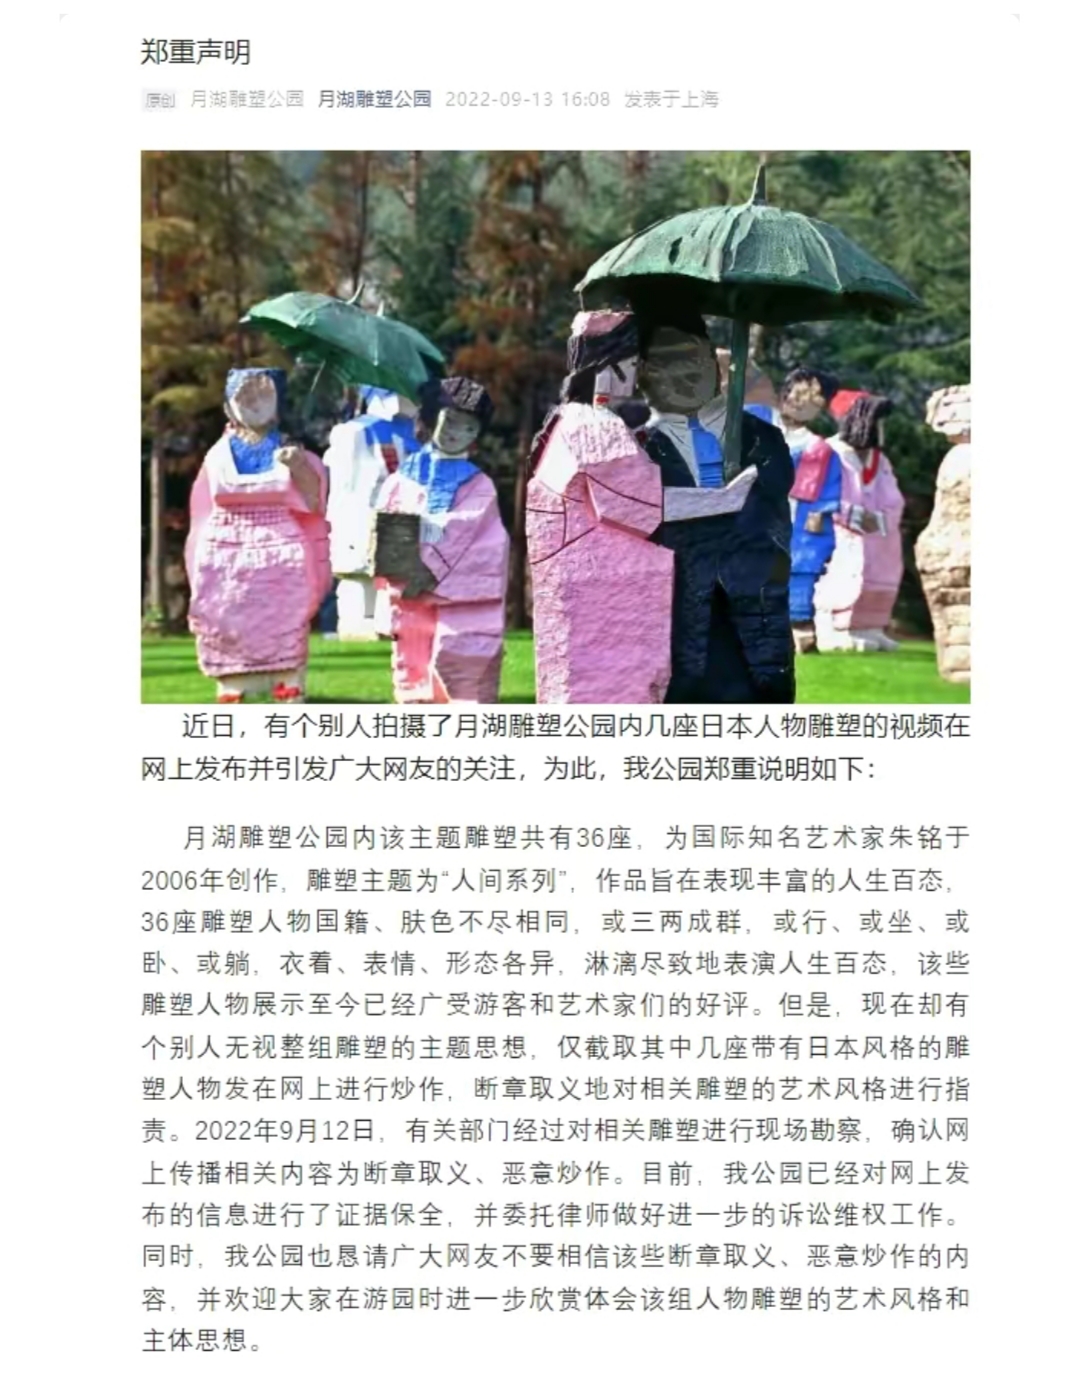 上海市|上海月湖雕塑公园，日本人的雕塑被用布遮盖